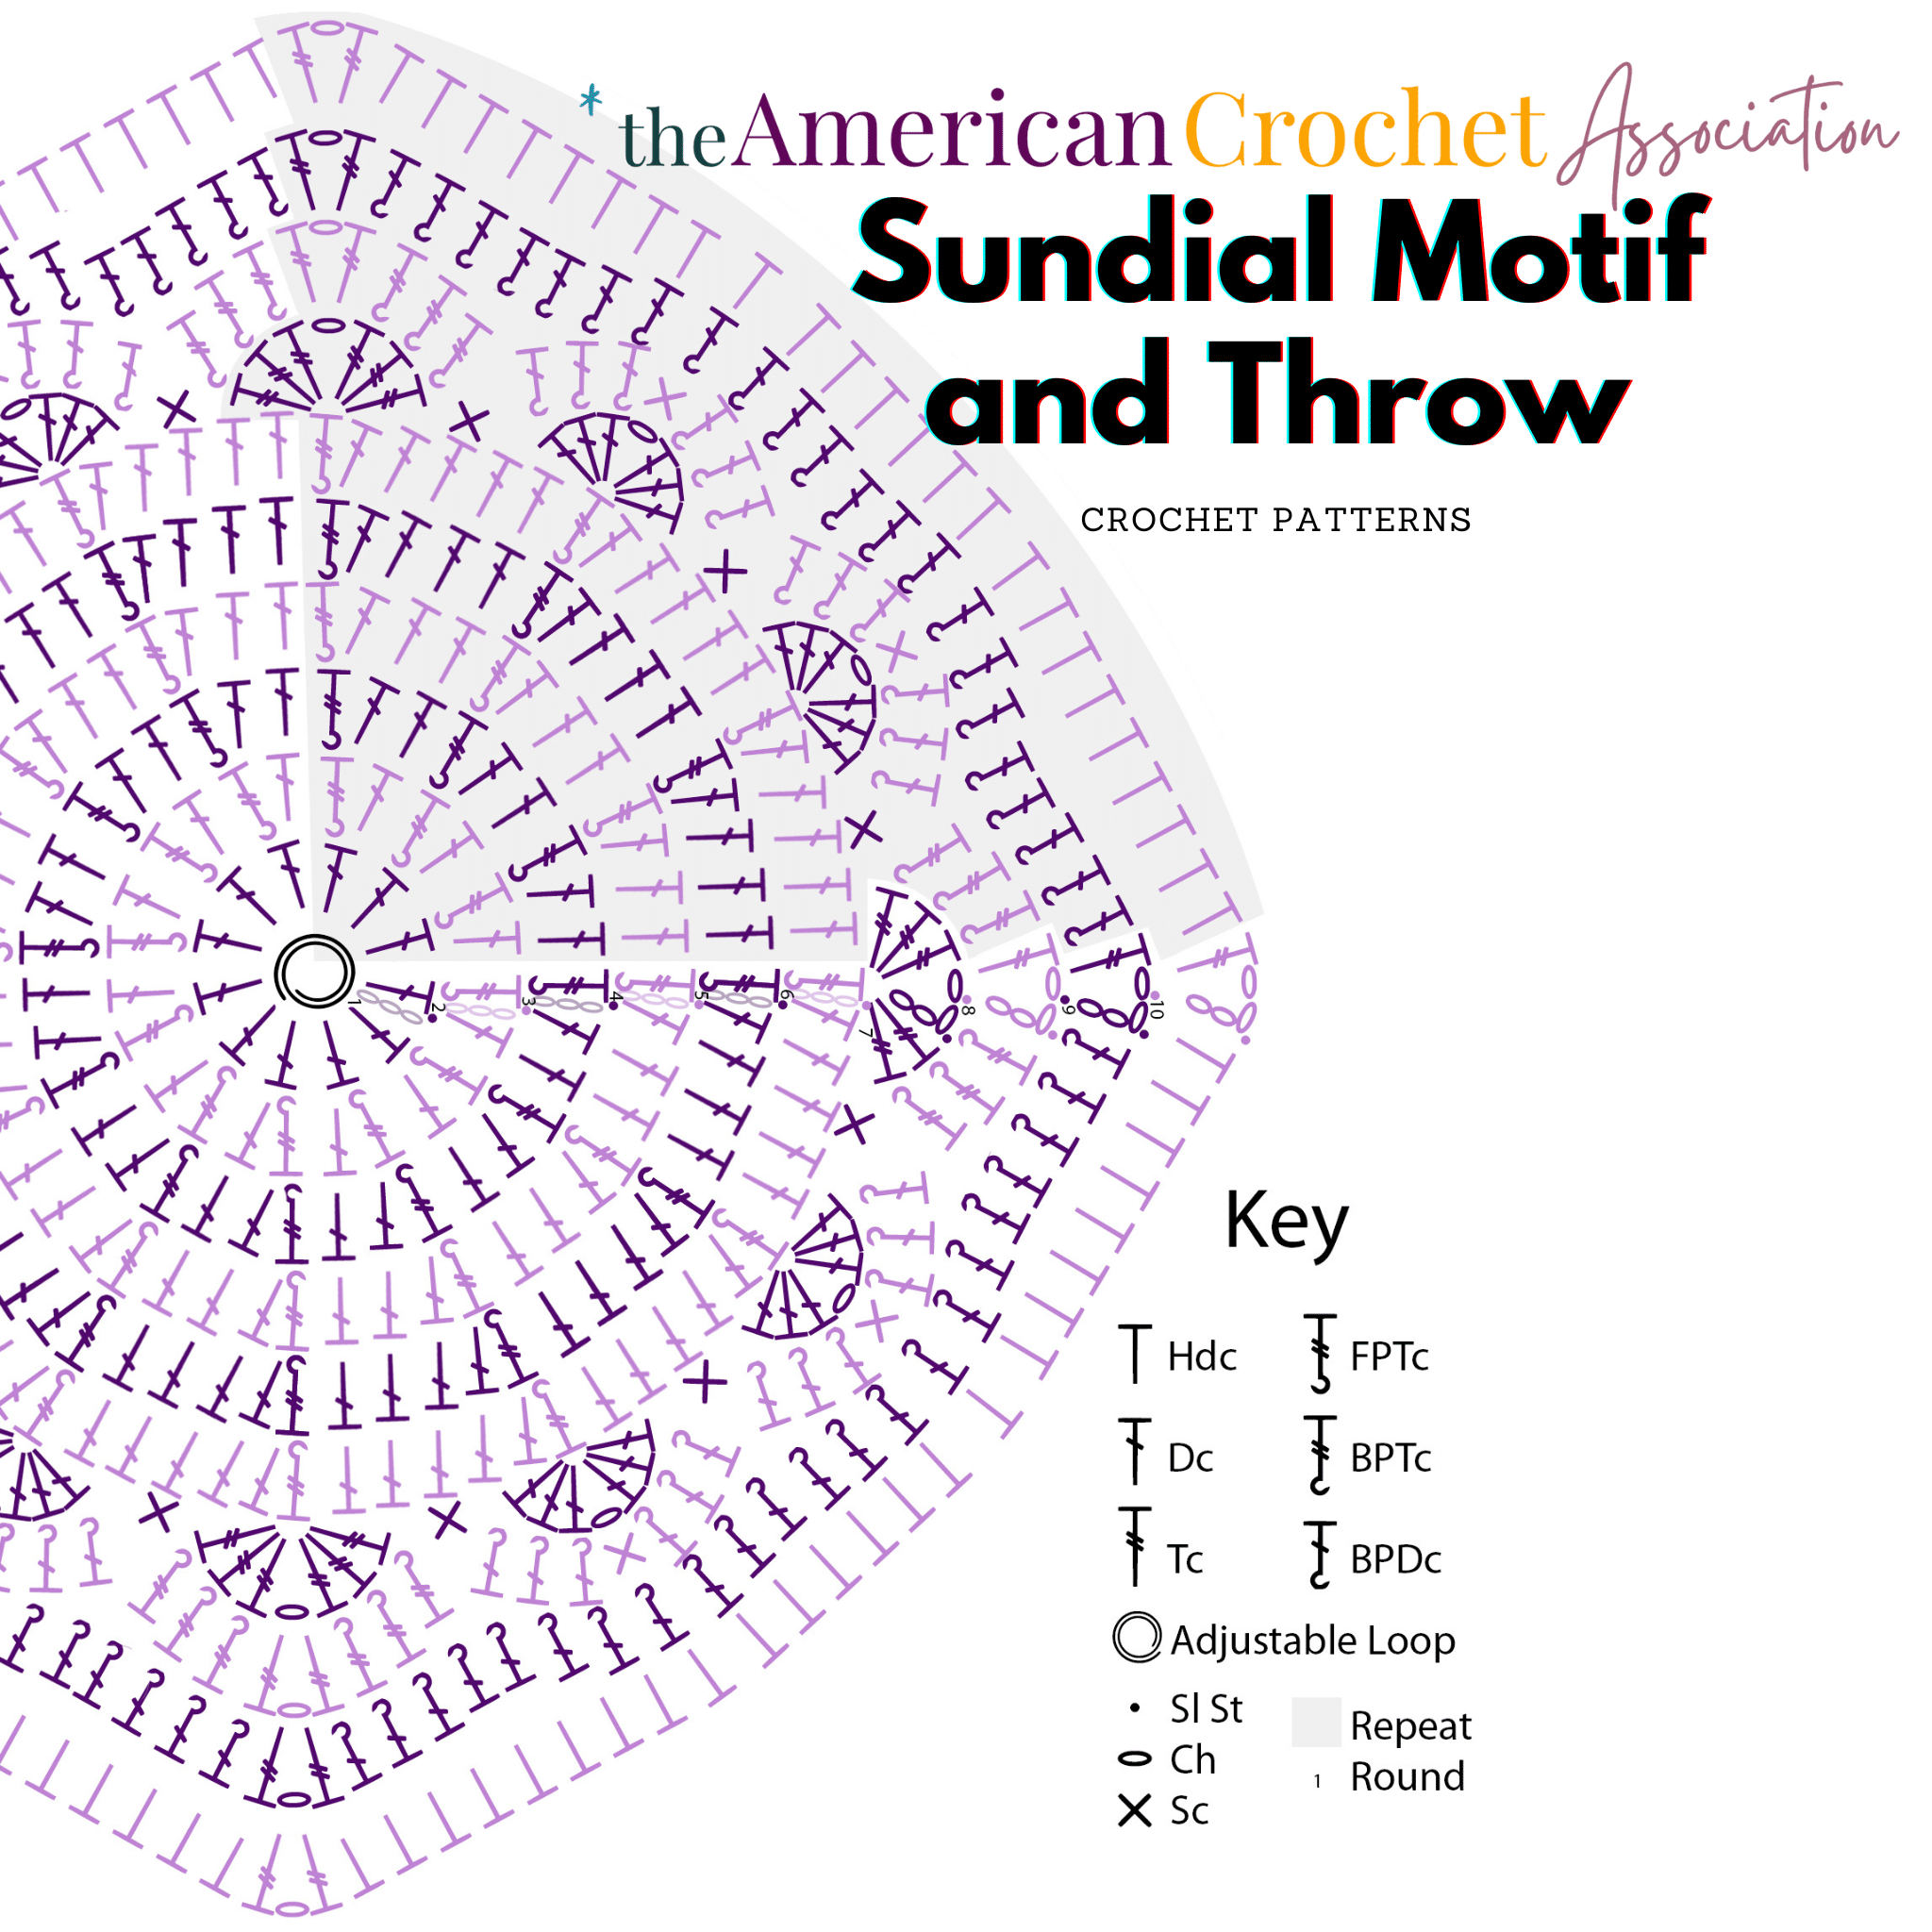 Sundial Motif and Throw Crochet Chart Pattern - American Crochet Association